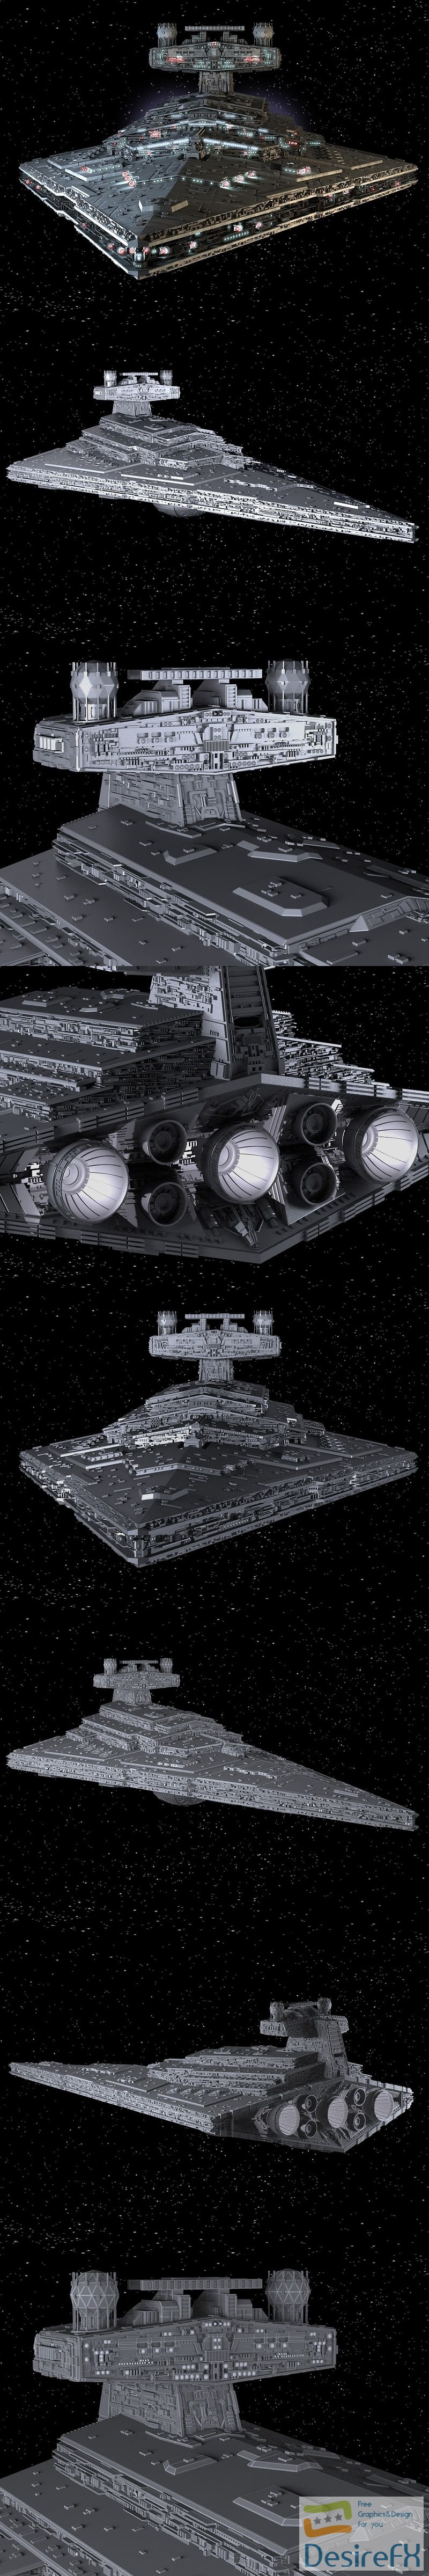 Star Wars Star Destroyer 3D Model